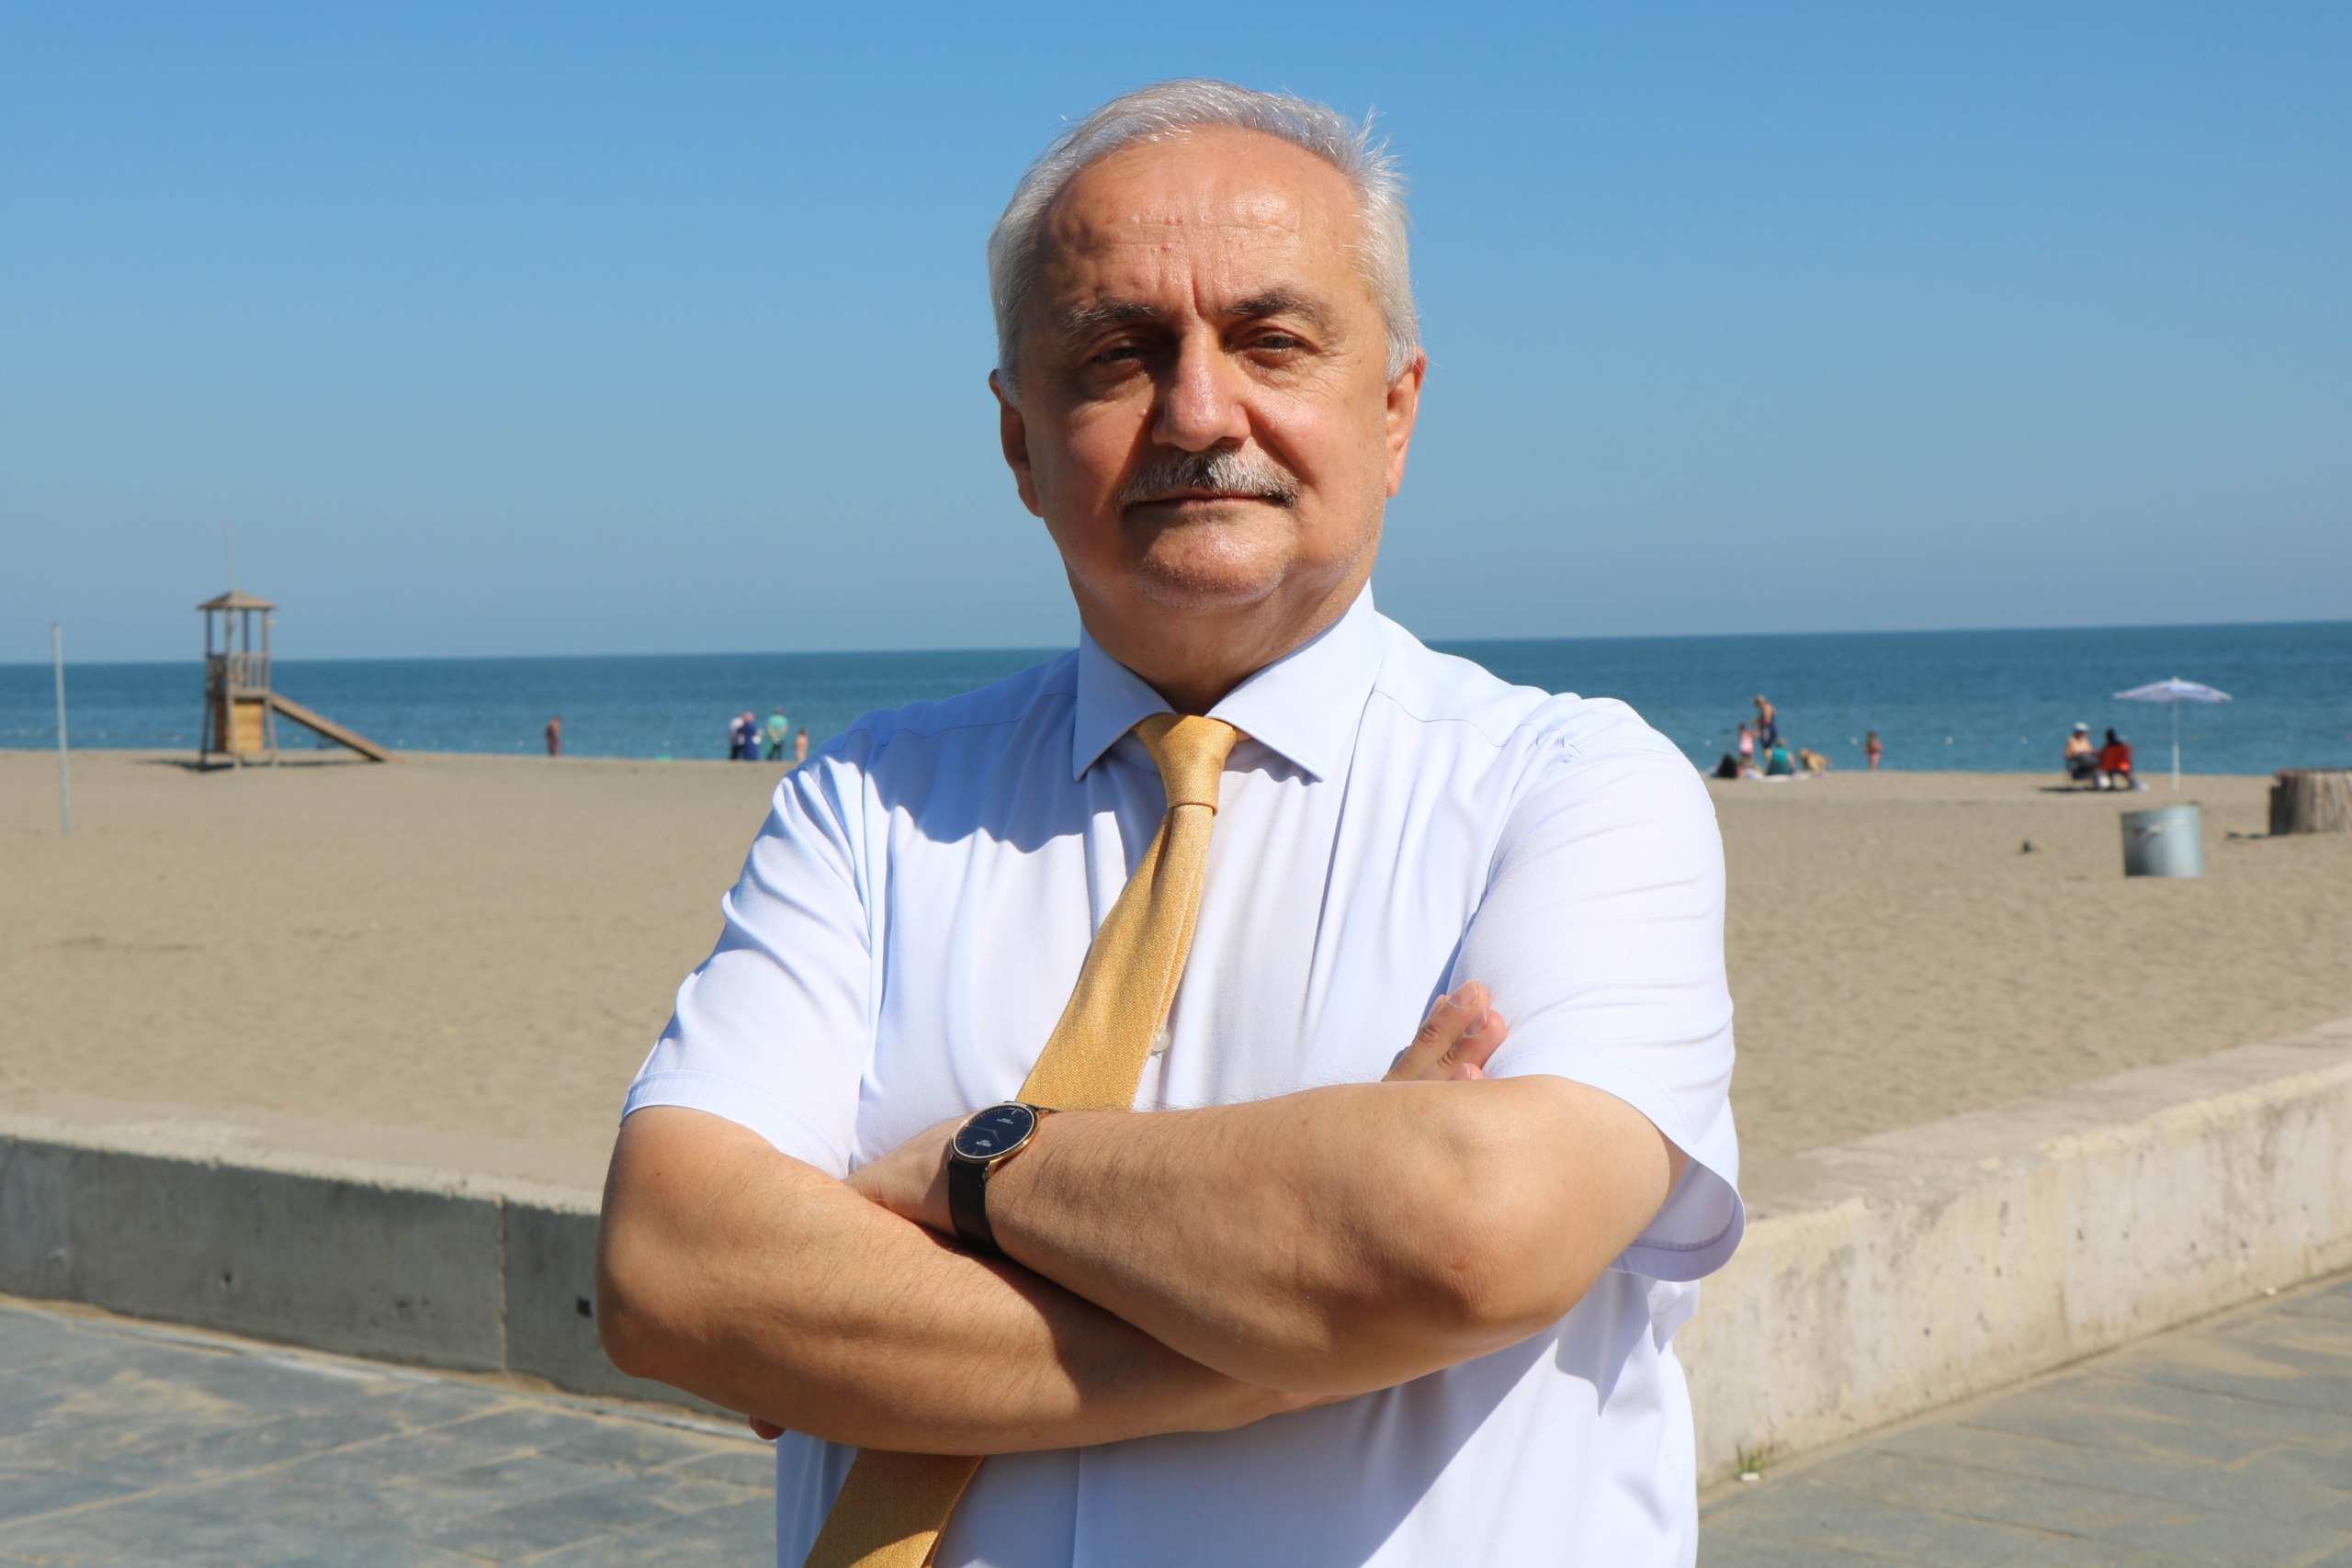 Samsun OMÜ Ziraat Fakültesi Tarımsal Yapılar ve Sulama Bölümü Öğretim Üyesi Prof. Dr. Yusuf Demir, Türkiye'nin son 15 yılın en kurak dönemini yaşadığını dile getirerek alınması gereken önlemlerden bahsetti